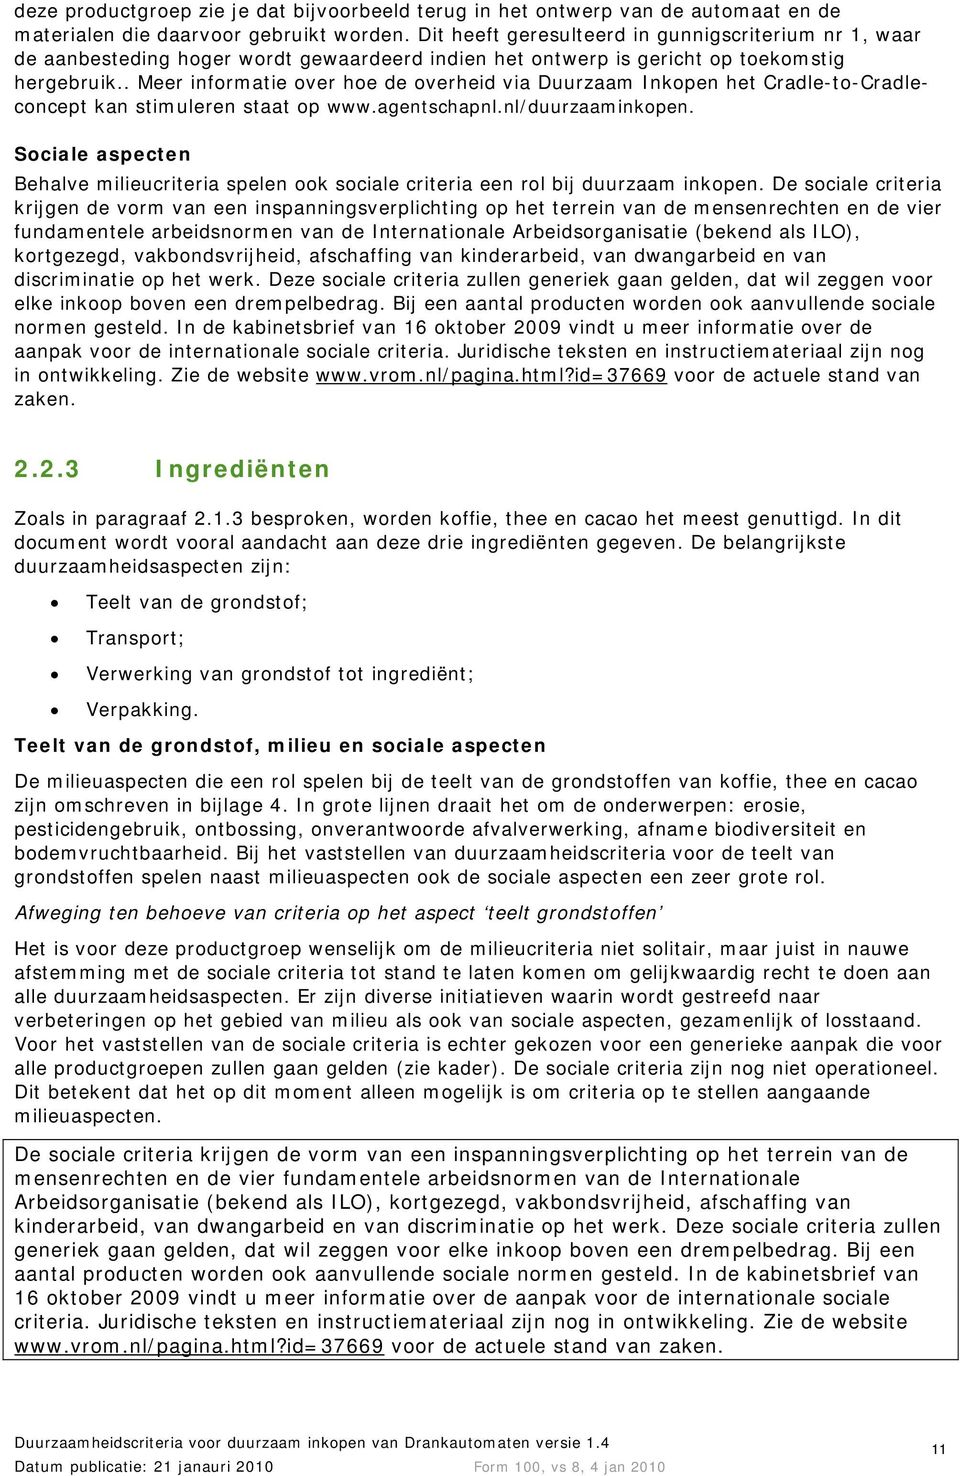 . Meer informatie over hoe de overheid via Duurzaam Inkopen het Cradle-to-Cradleconcept kan stimuleren staat op www.agentschapnl.nl/duurzaaminkopen.